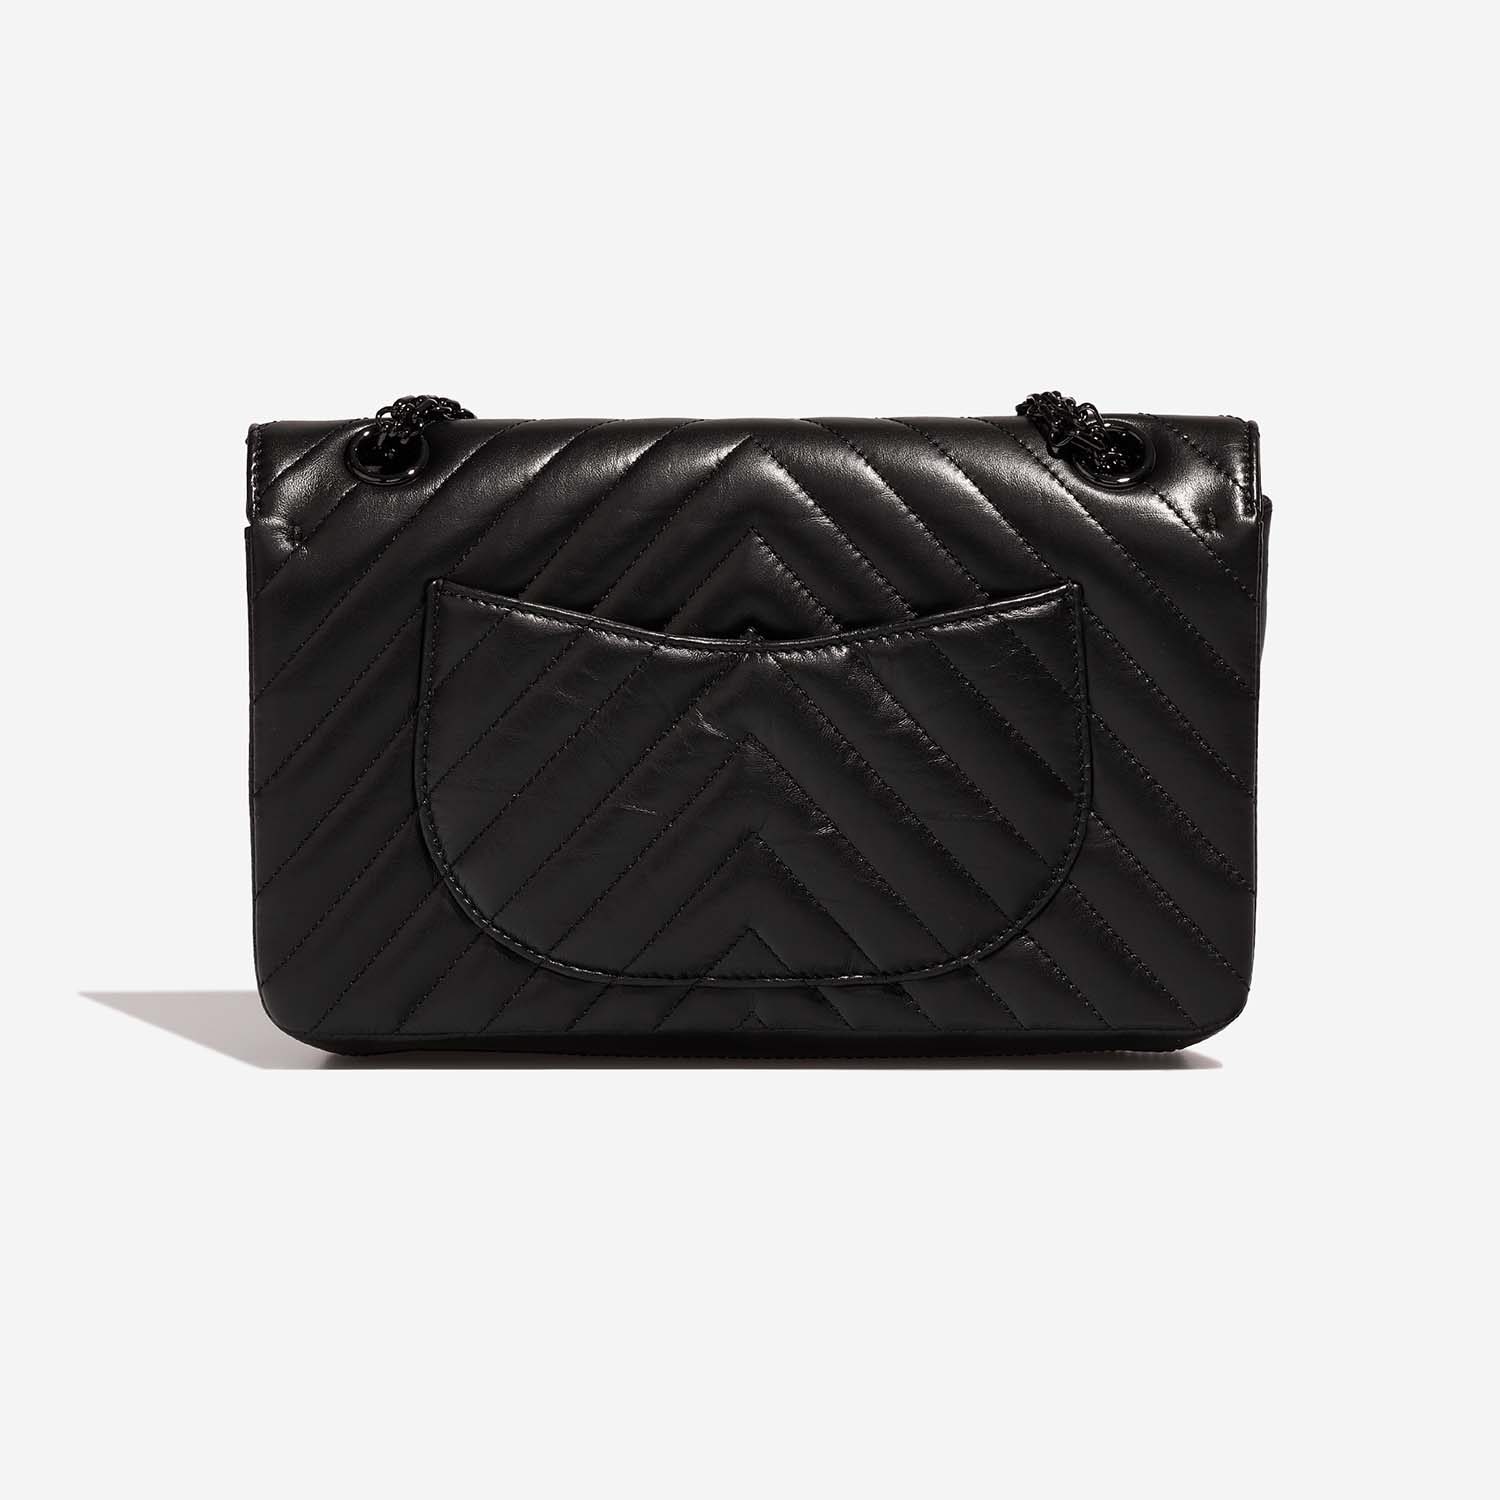 Chanel 255Reissue 225 Black Back | Verkaufen Sie Ihre Designer-Tasche auf Saclab.com